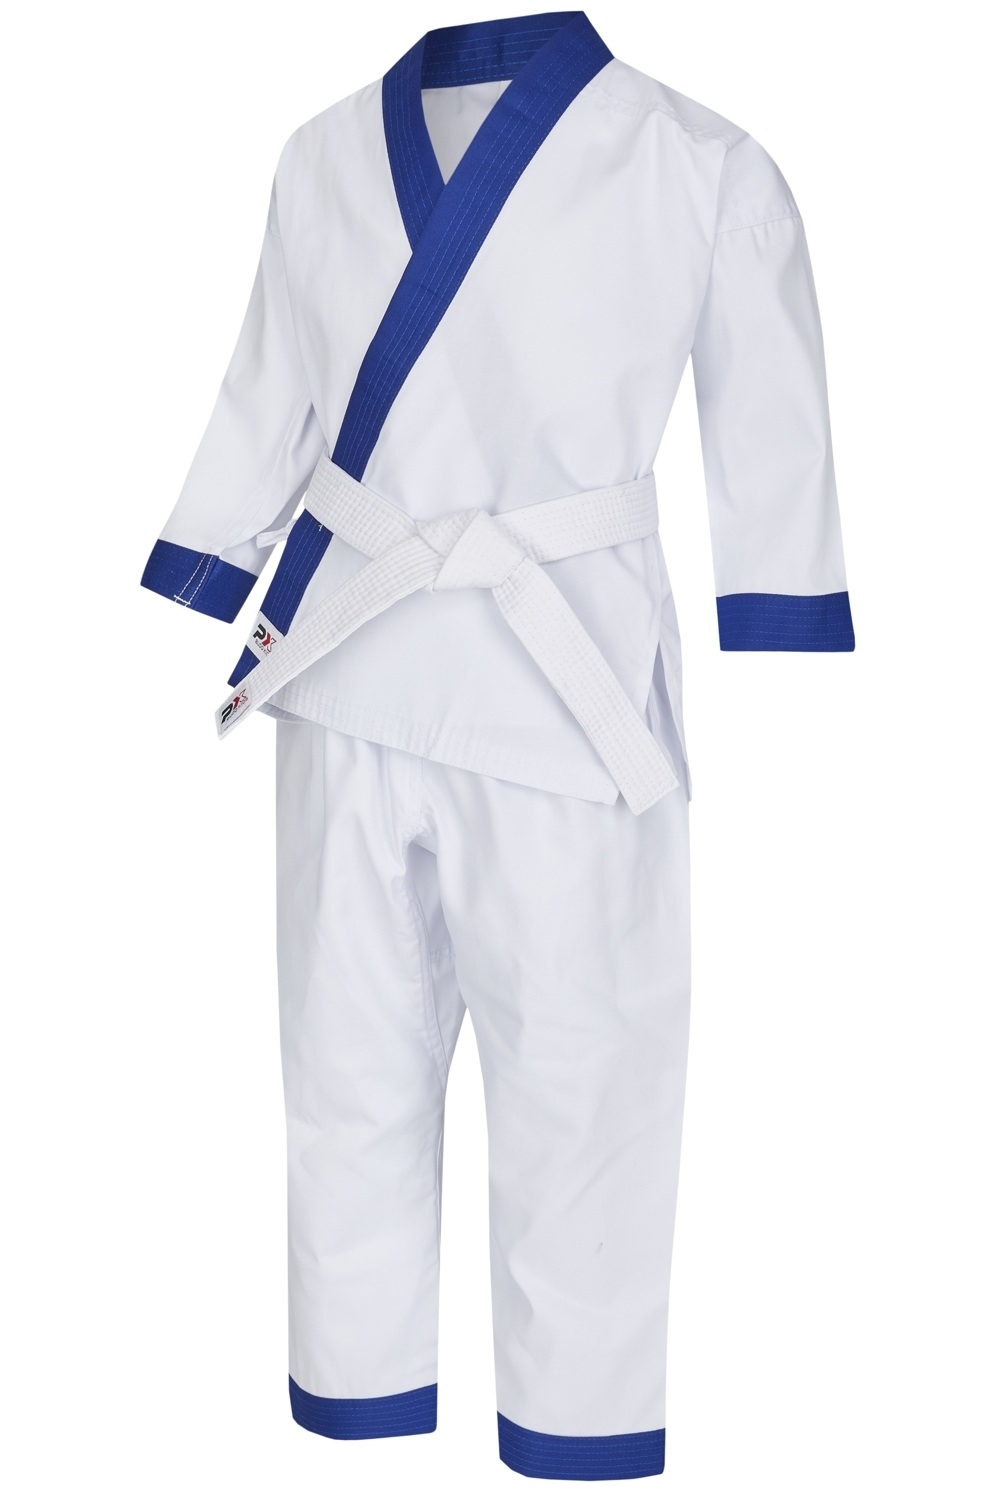 Kempo mit Karate Karate-Anzug mit Anzüge Kleidung Kampfanzüge Karate-Anzüge, | weiß, setlicher / Schnürung Kinder Revers, | blauem | | farbig budokonzept |